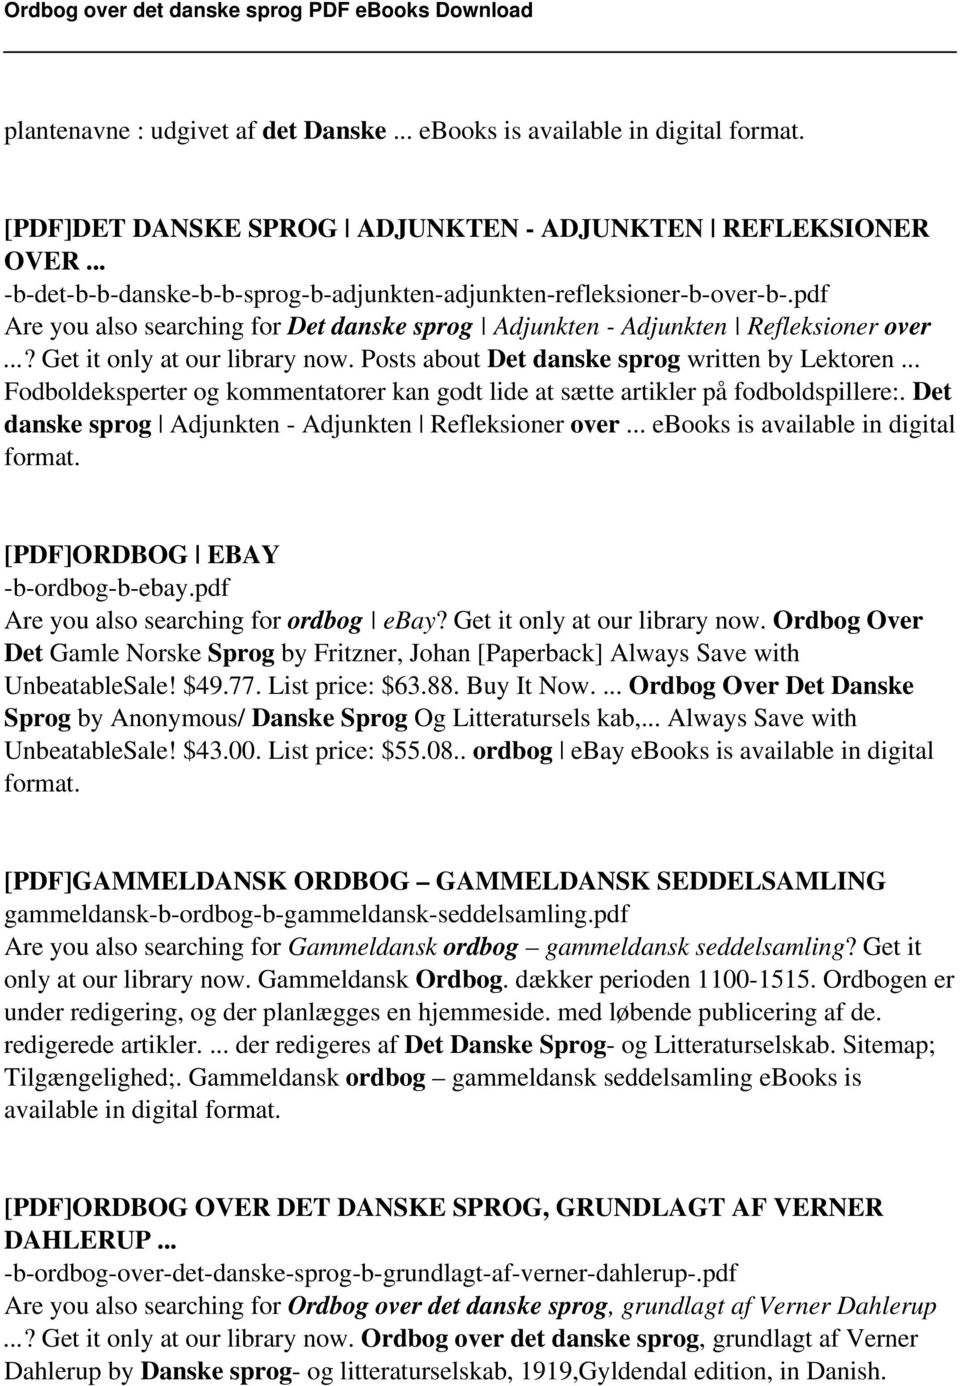 Ordbog over det danske sprog PDF - PDF Free Download